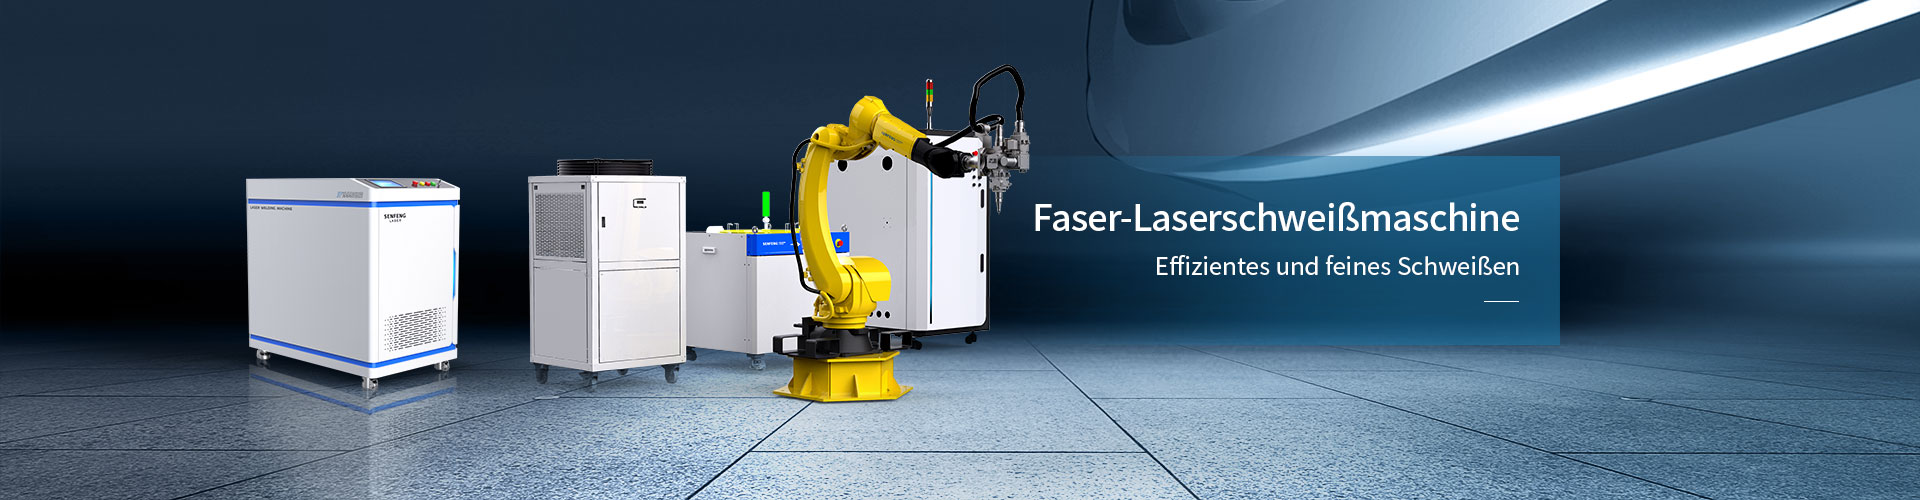 Faser-Laserschweißmaschine